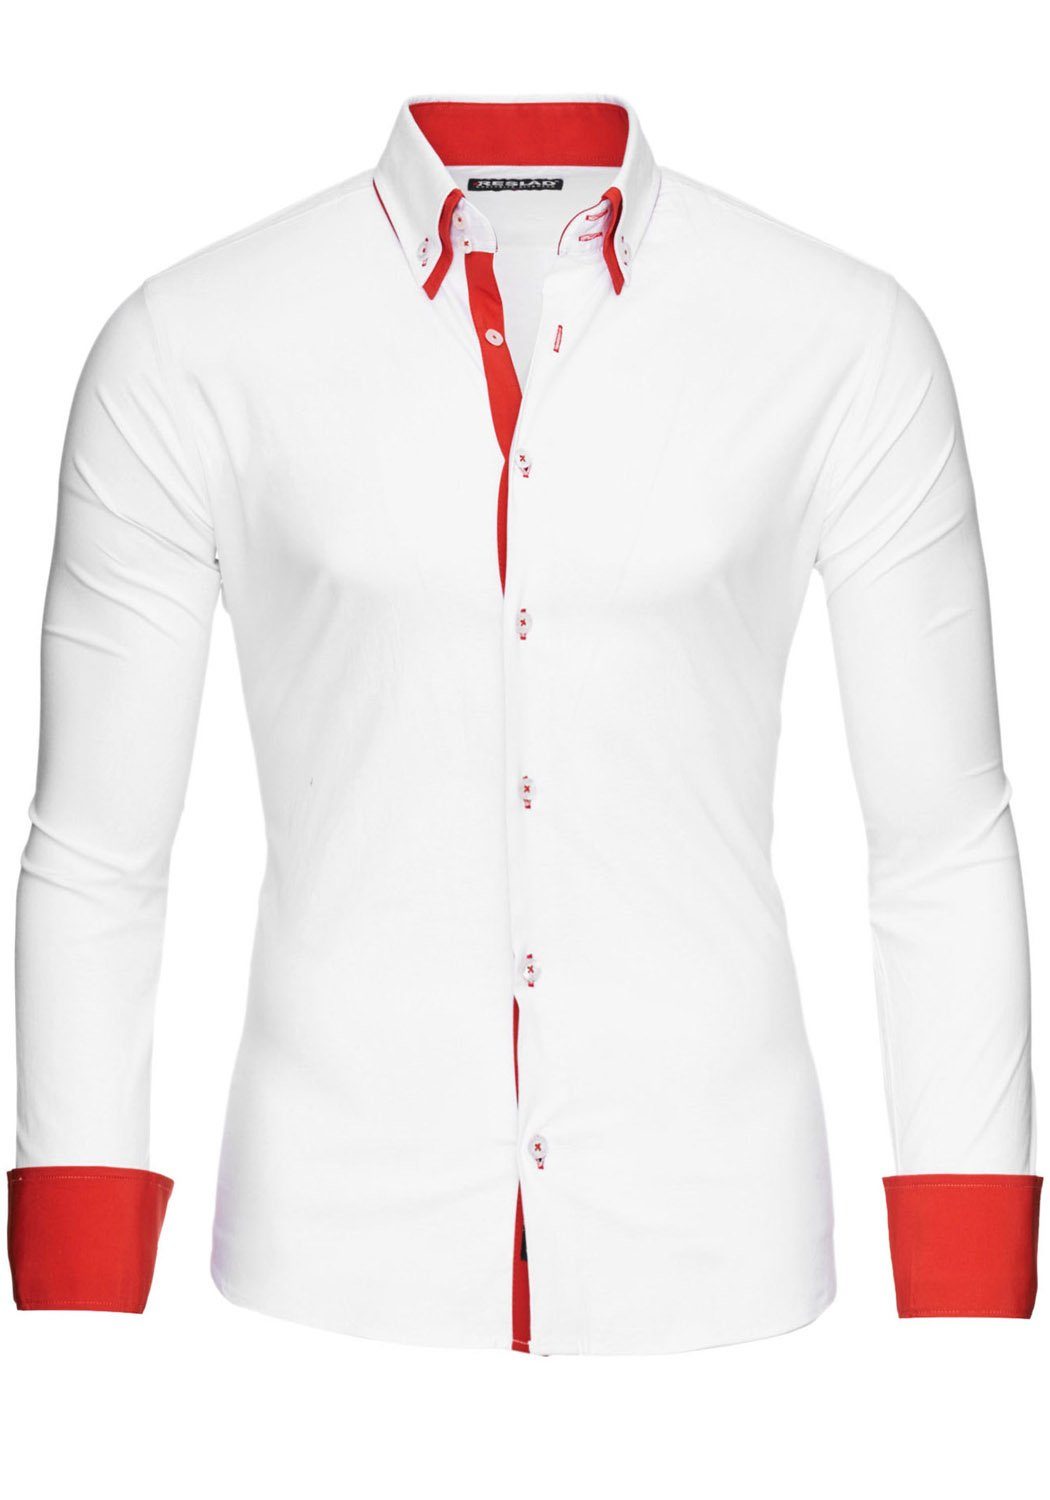 Reslad Langarmhemd Reslad Herren Langarm Hemd Alabama RS-7050 Doppelkragen Kontrast Männer Hemden